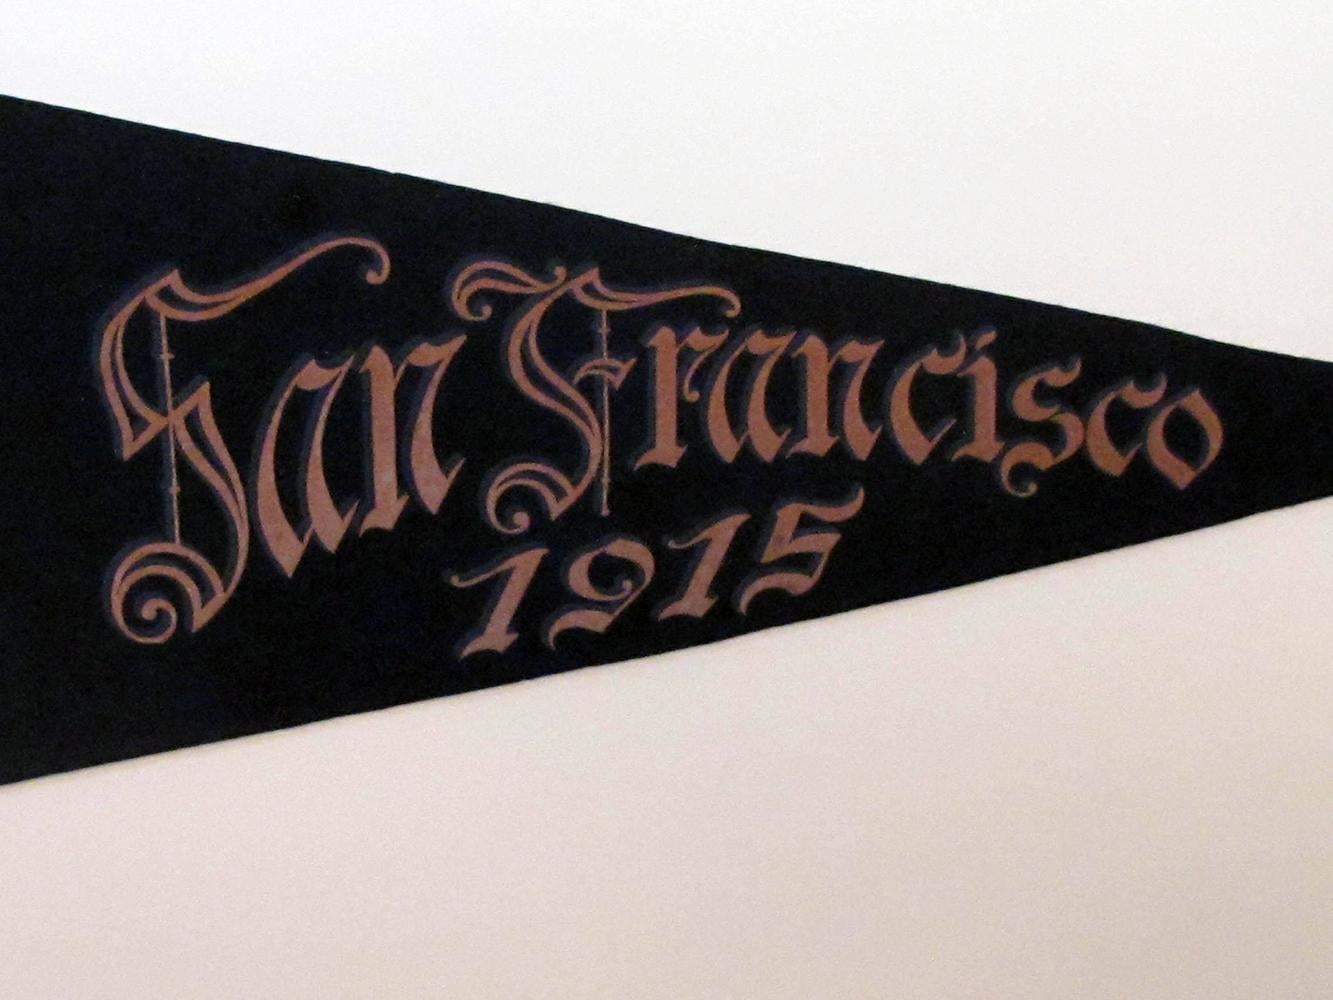 San Francisco Panama-Pacific Exposition of 1915 Souvenir Banner & Entrance Badge 3